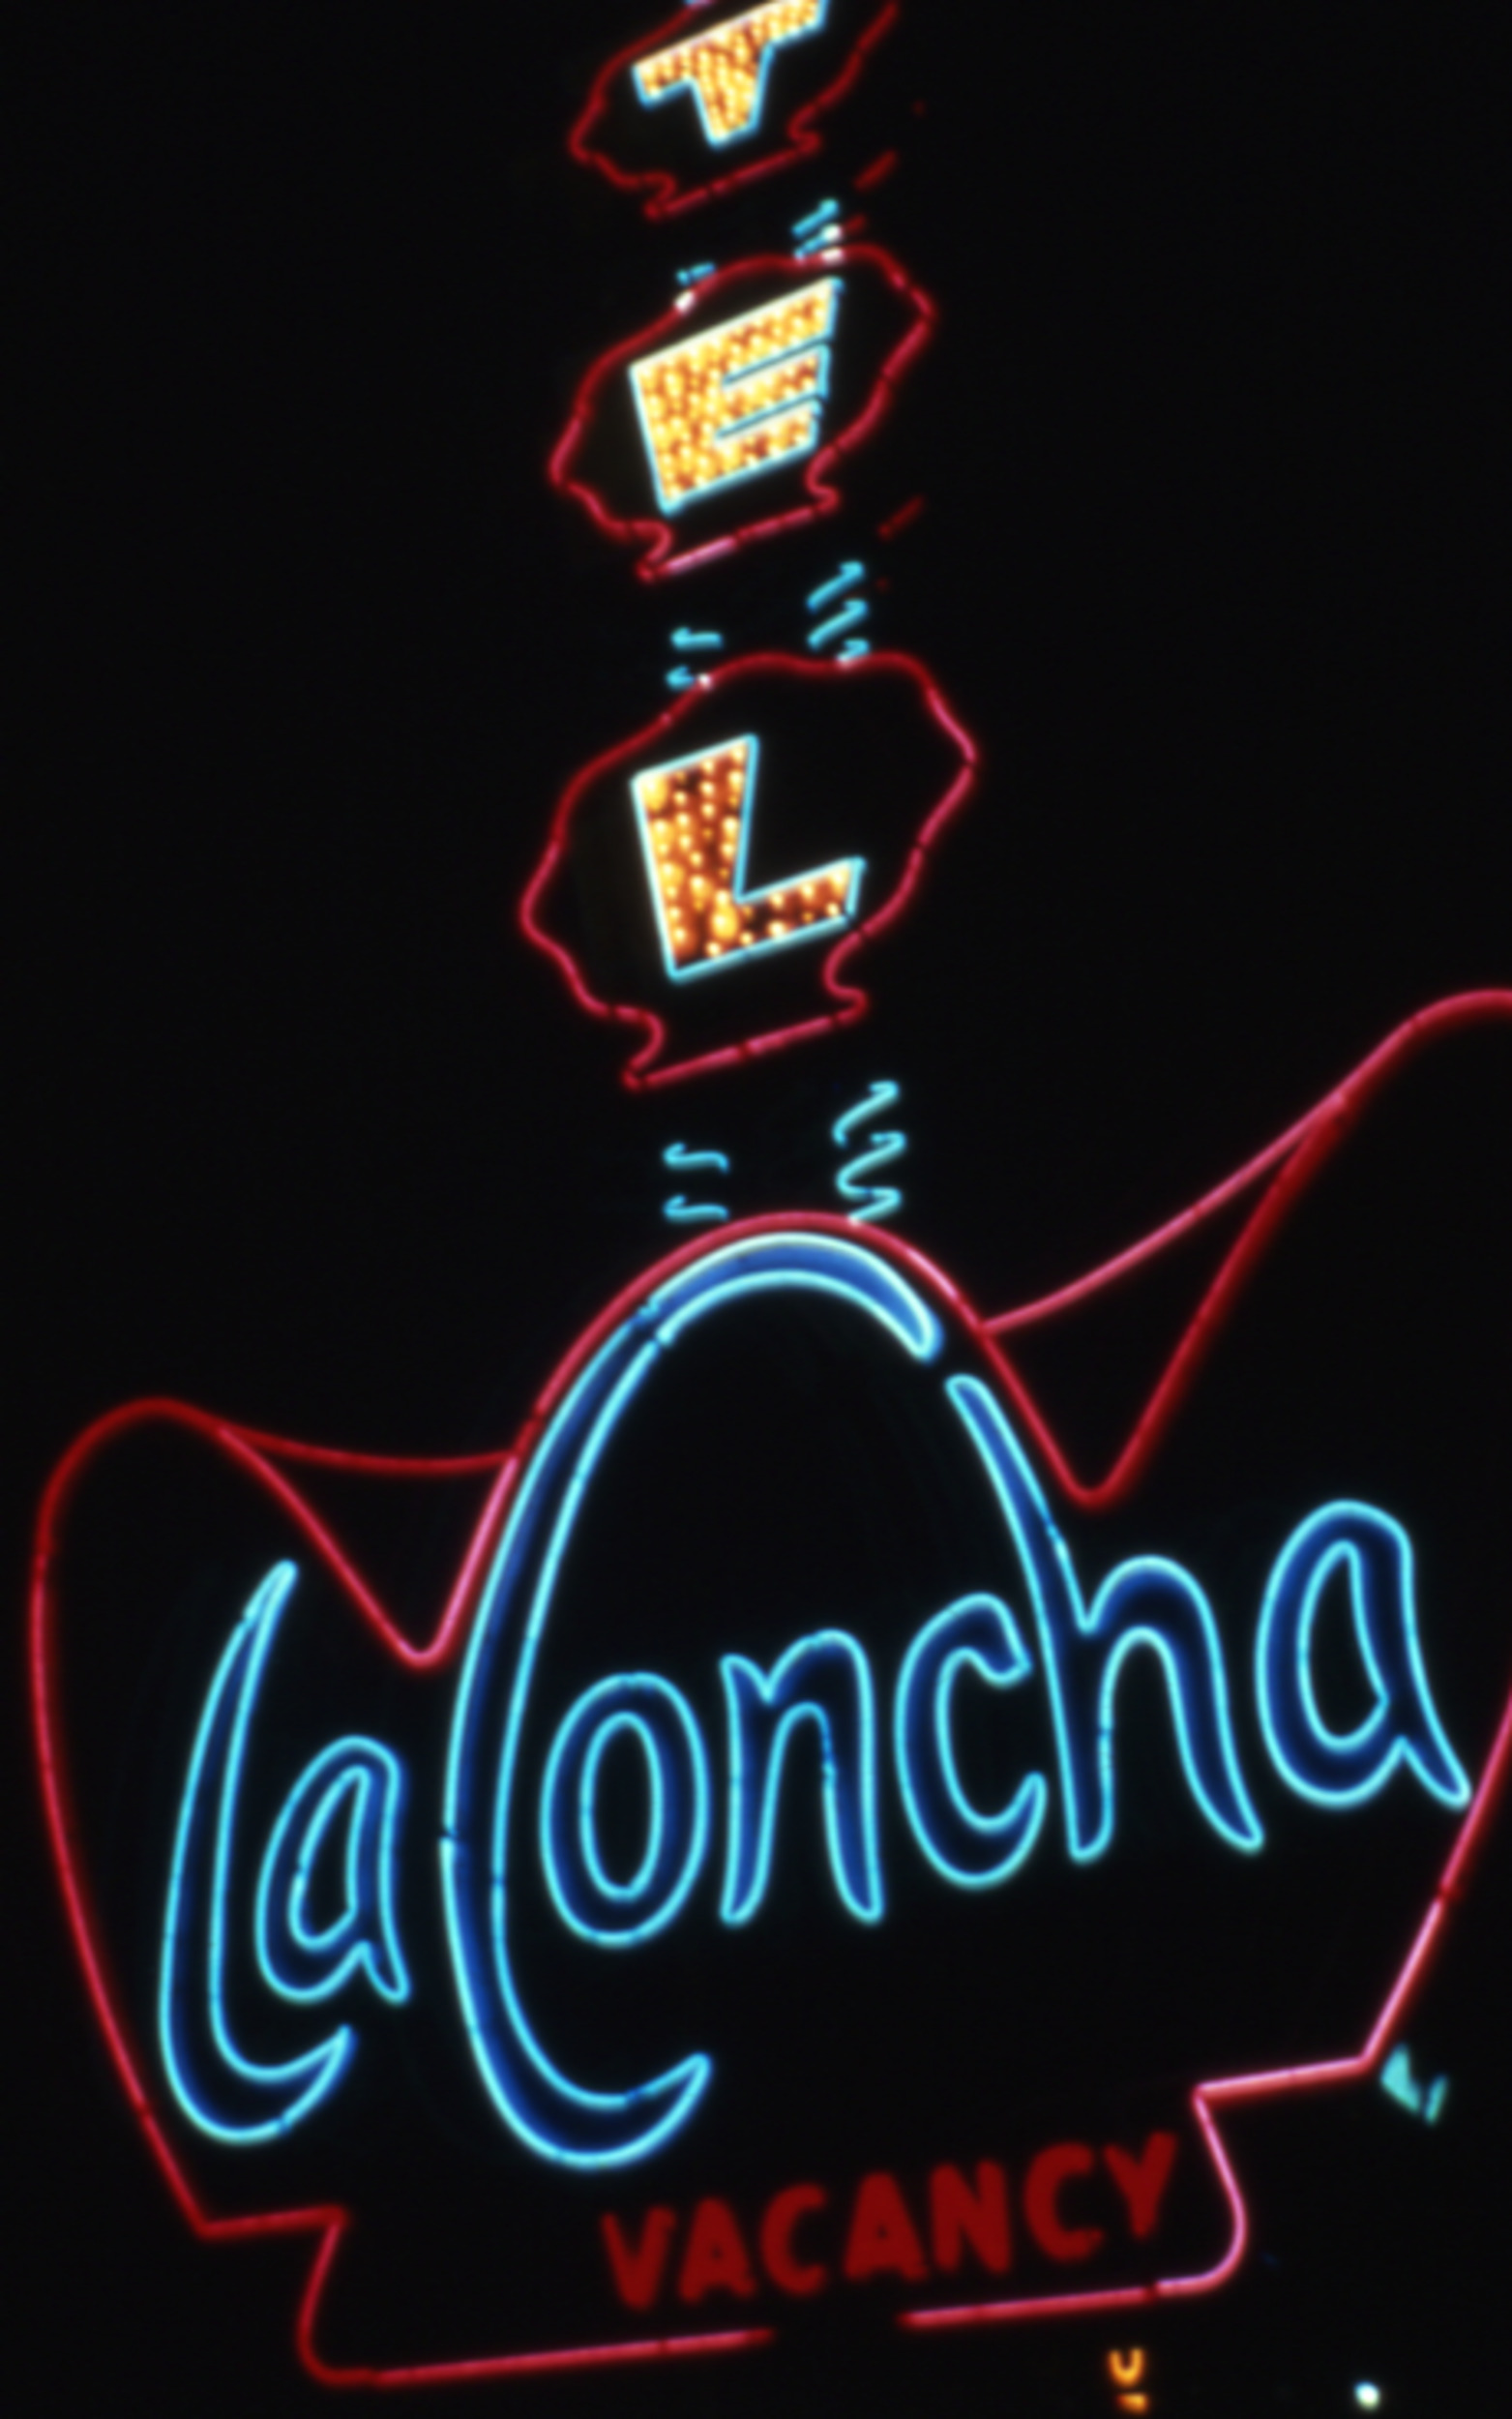 Slide of neon sign for the La Concha Motel, Las Vegas, Nevada, circa 1980s